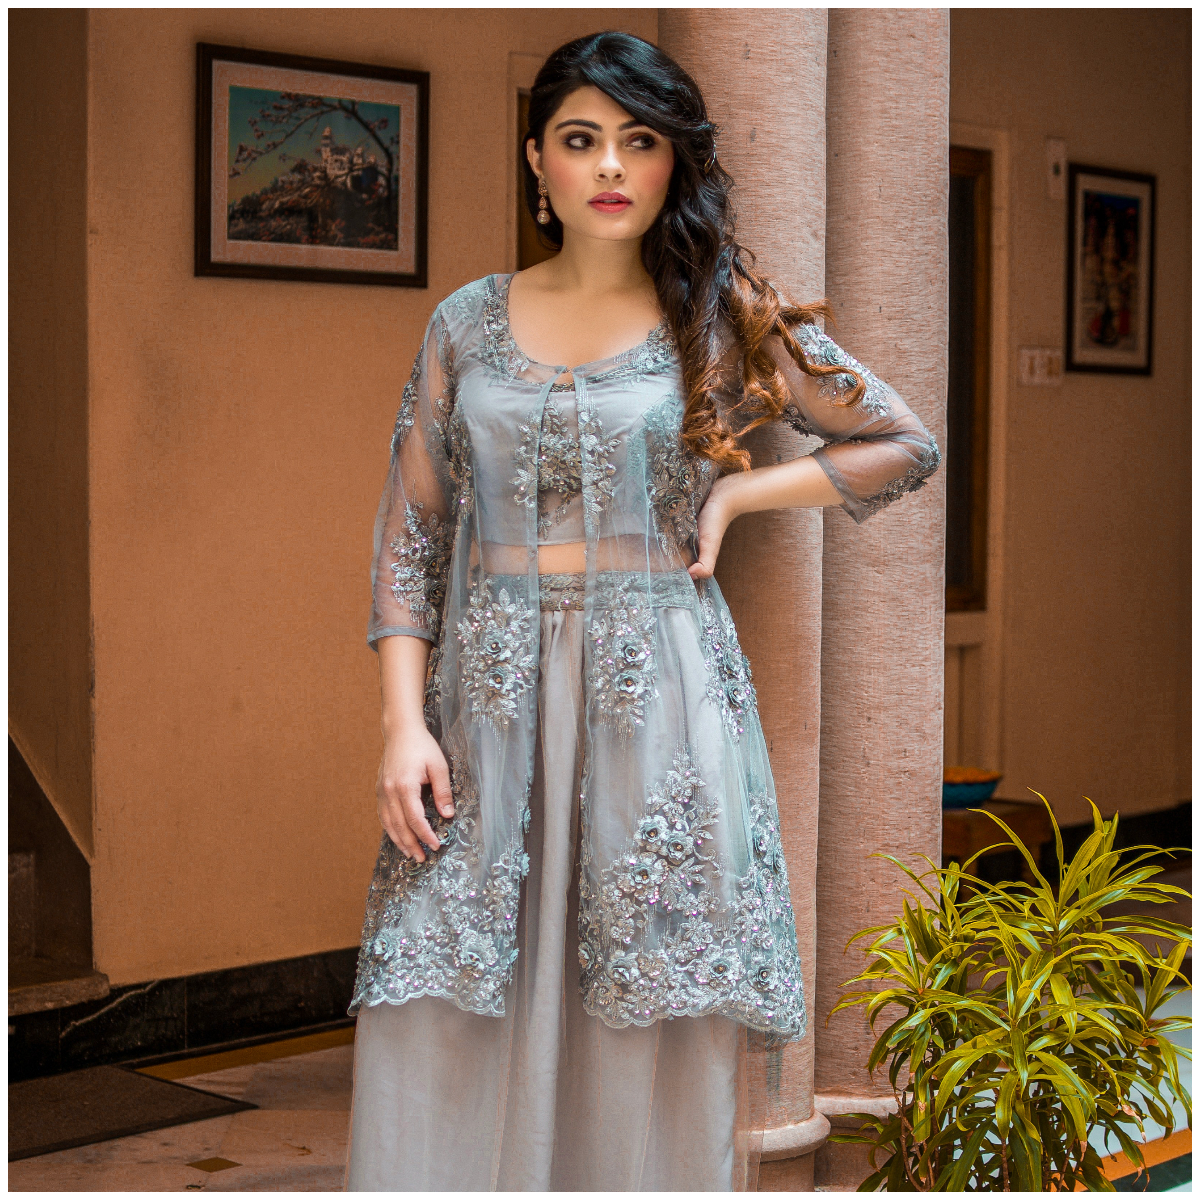 Ethnic Wear - Shop Online Indian Ethnic Wear for Women & Girls | Biba